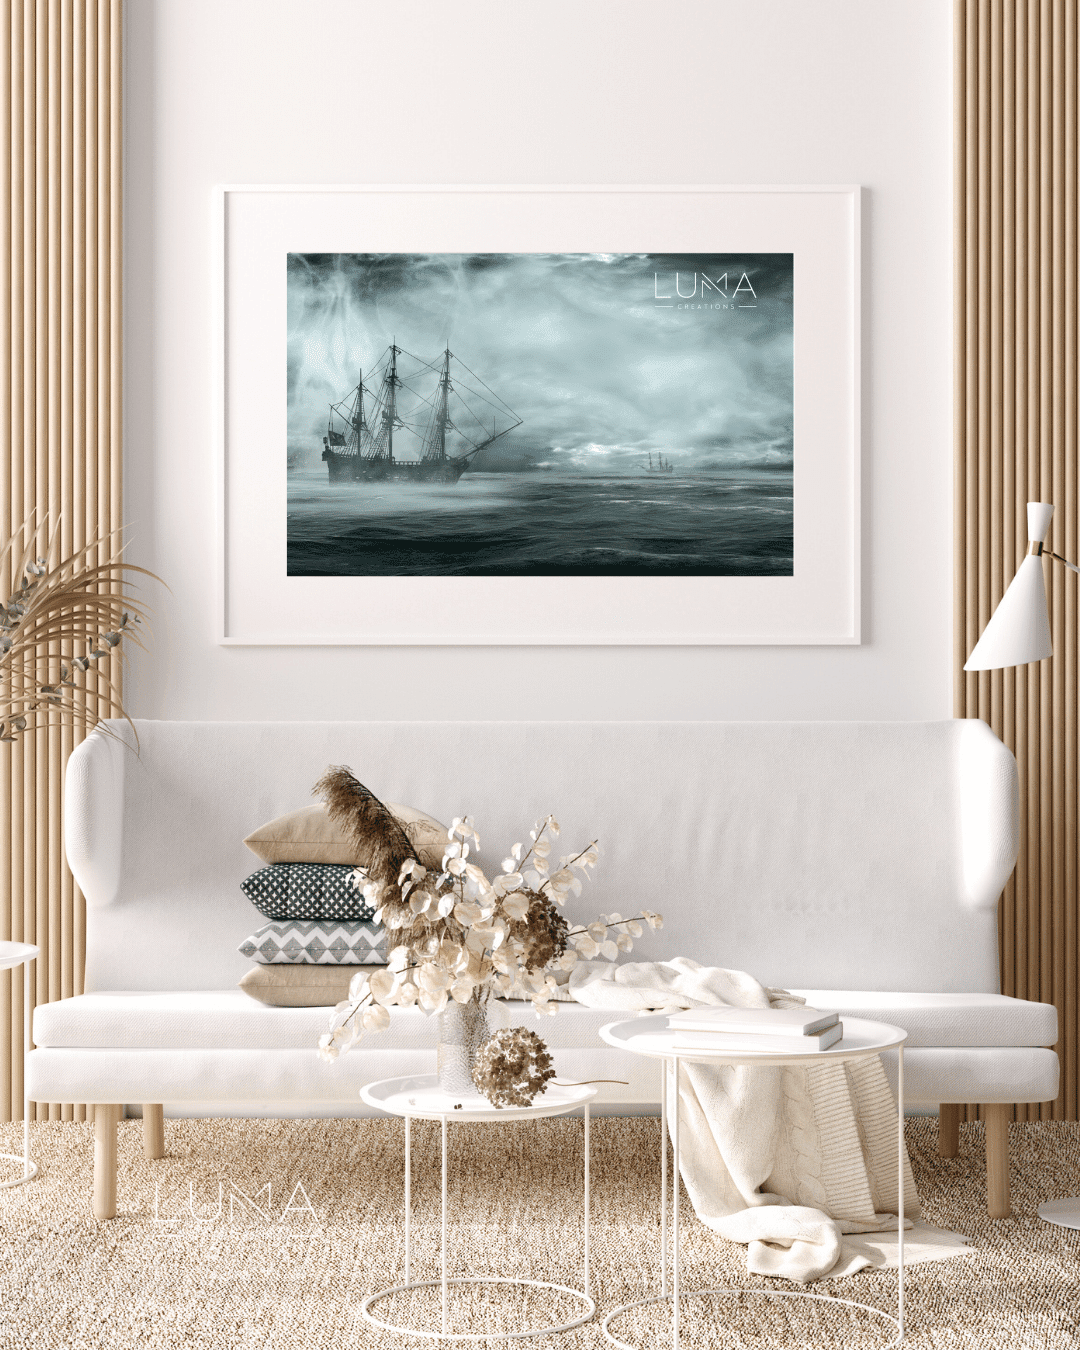 Stromy Sails Landscape Artwork